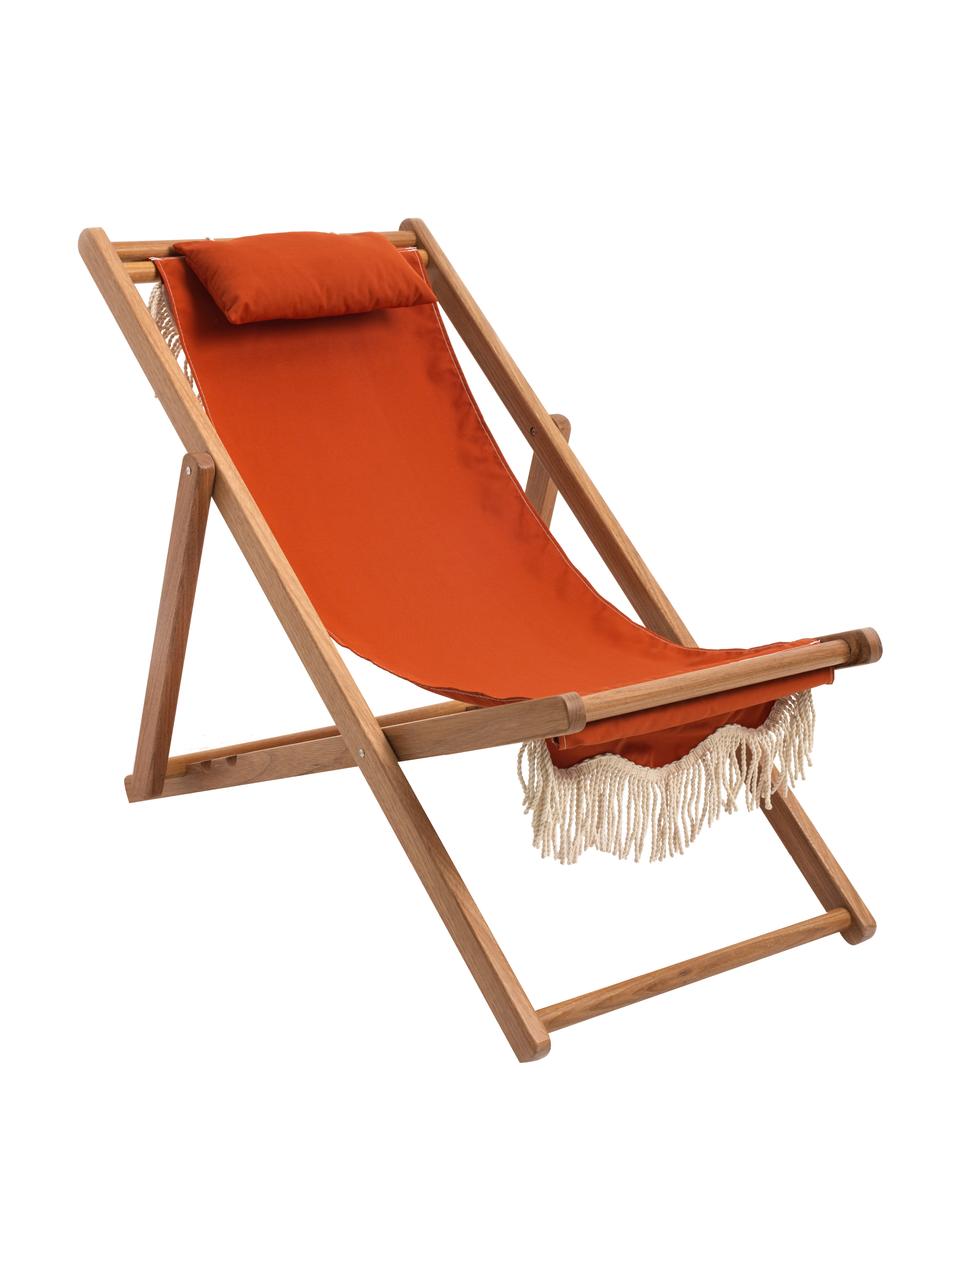 Leżak składany z frędzlami Sling, Stelaż: drewno naturalne, Jasne drewno naturalne, pomarańczowy, S 59 x W 79 cm